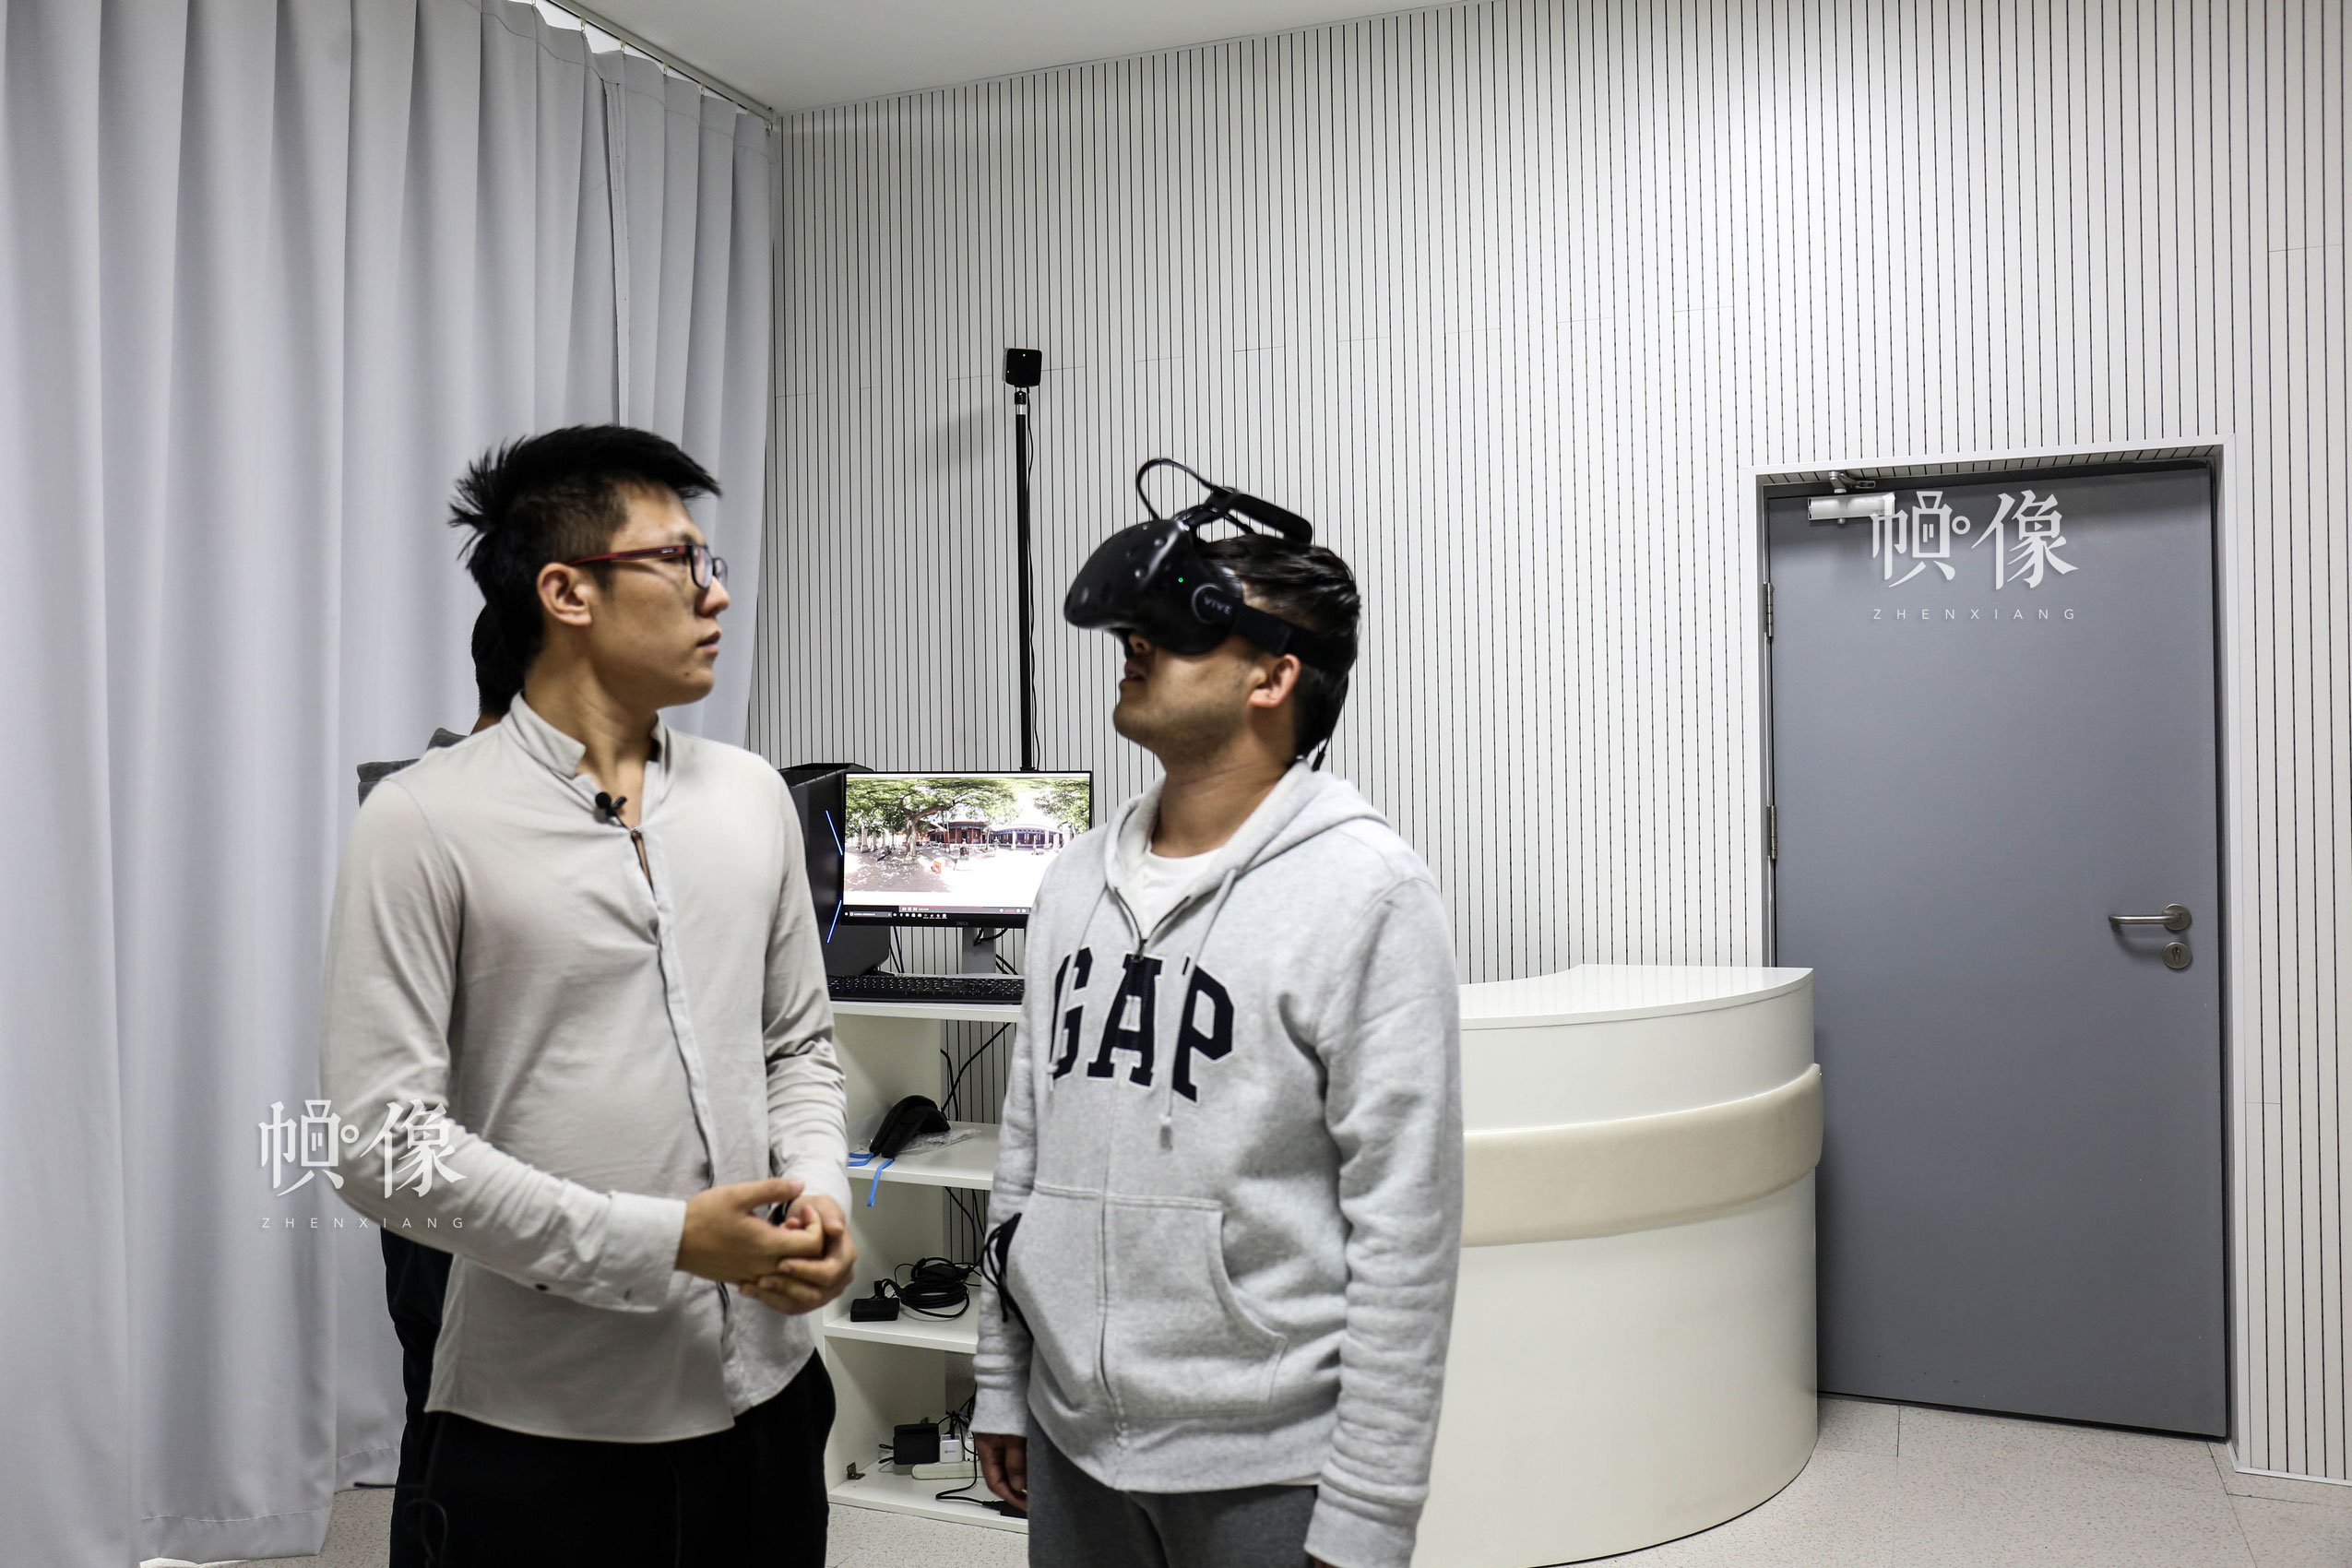 朝阳规划艺术馆VR(Virtual-Reality-)技术体验室，图为讲解员（左）在介绍引导体验者（右）体验东岳庙场景VR技术。中国网记者 赵超 摄